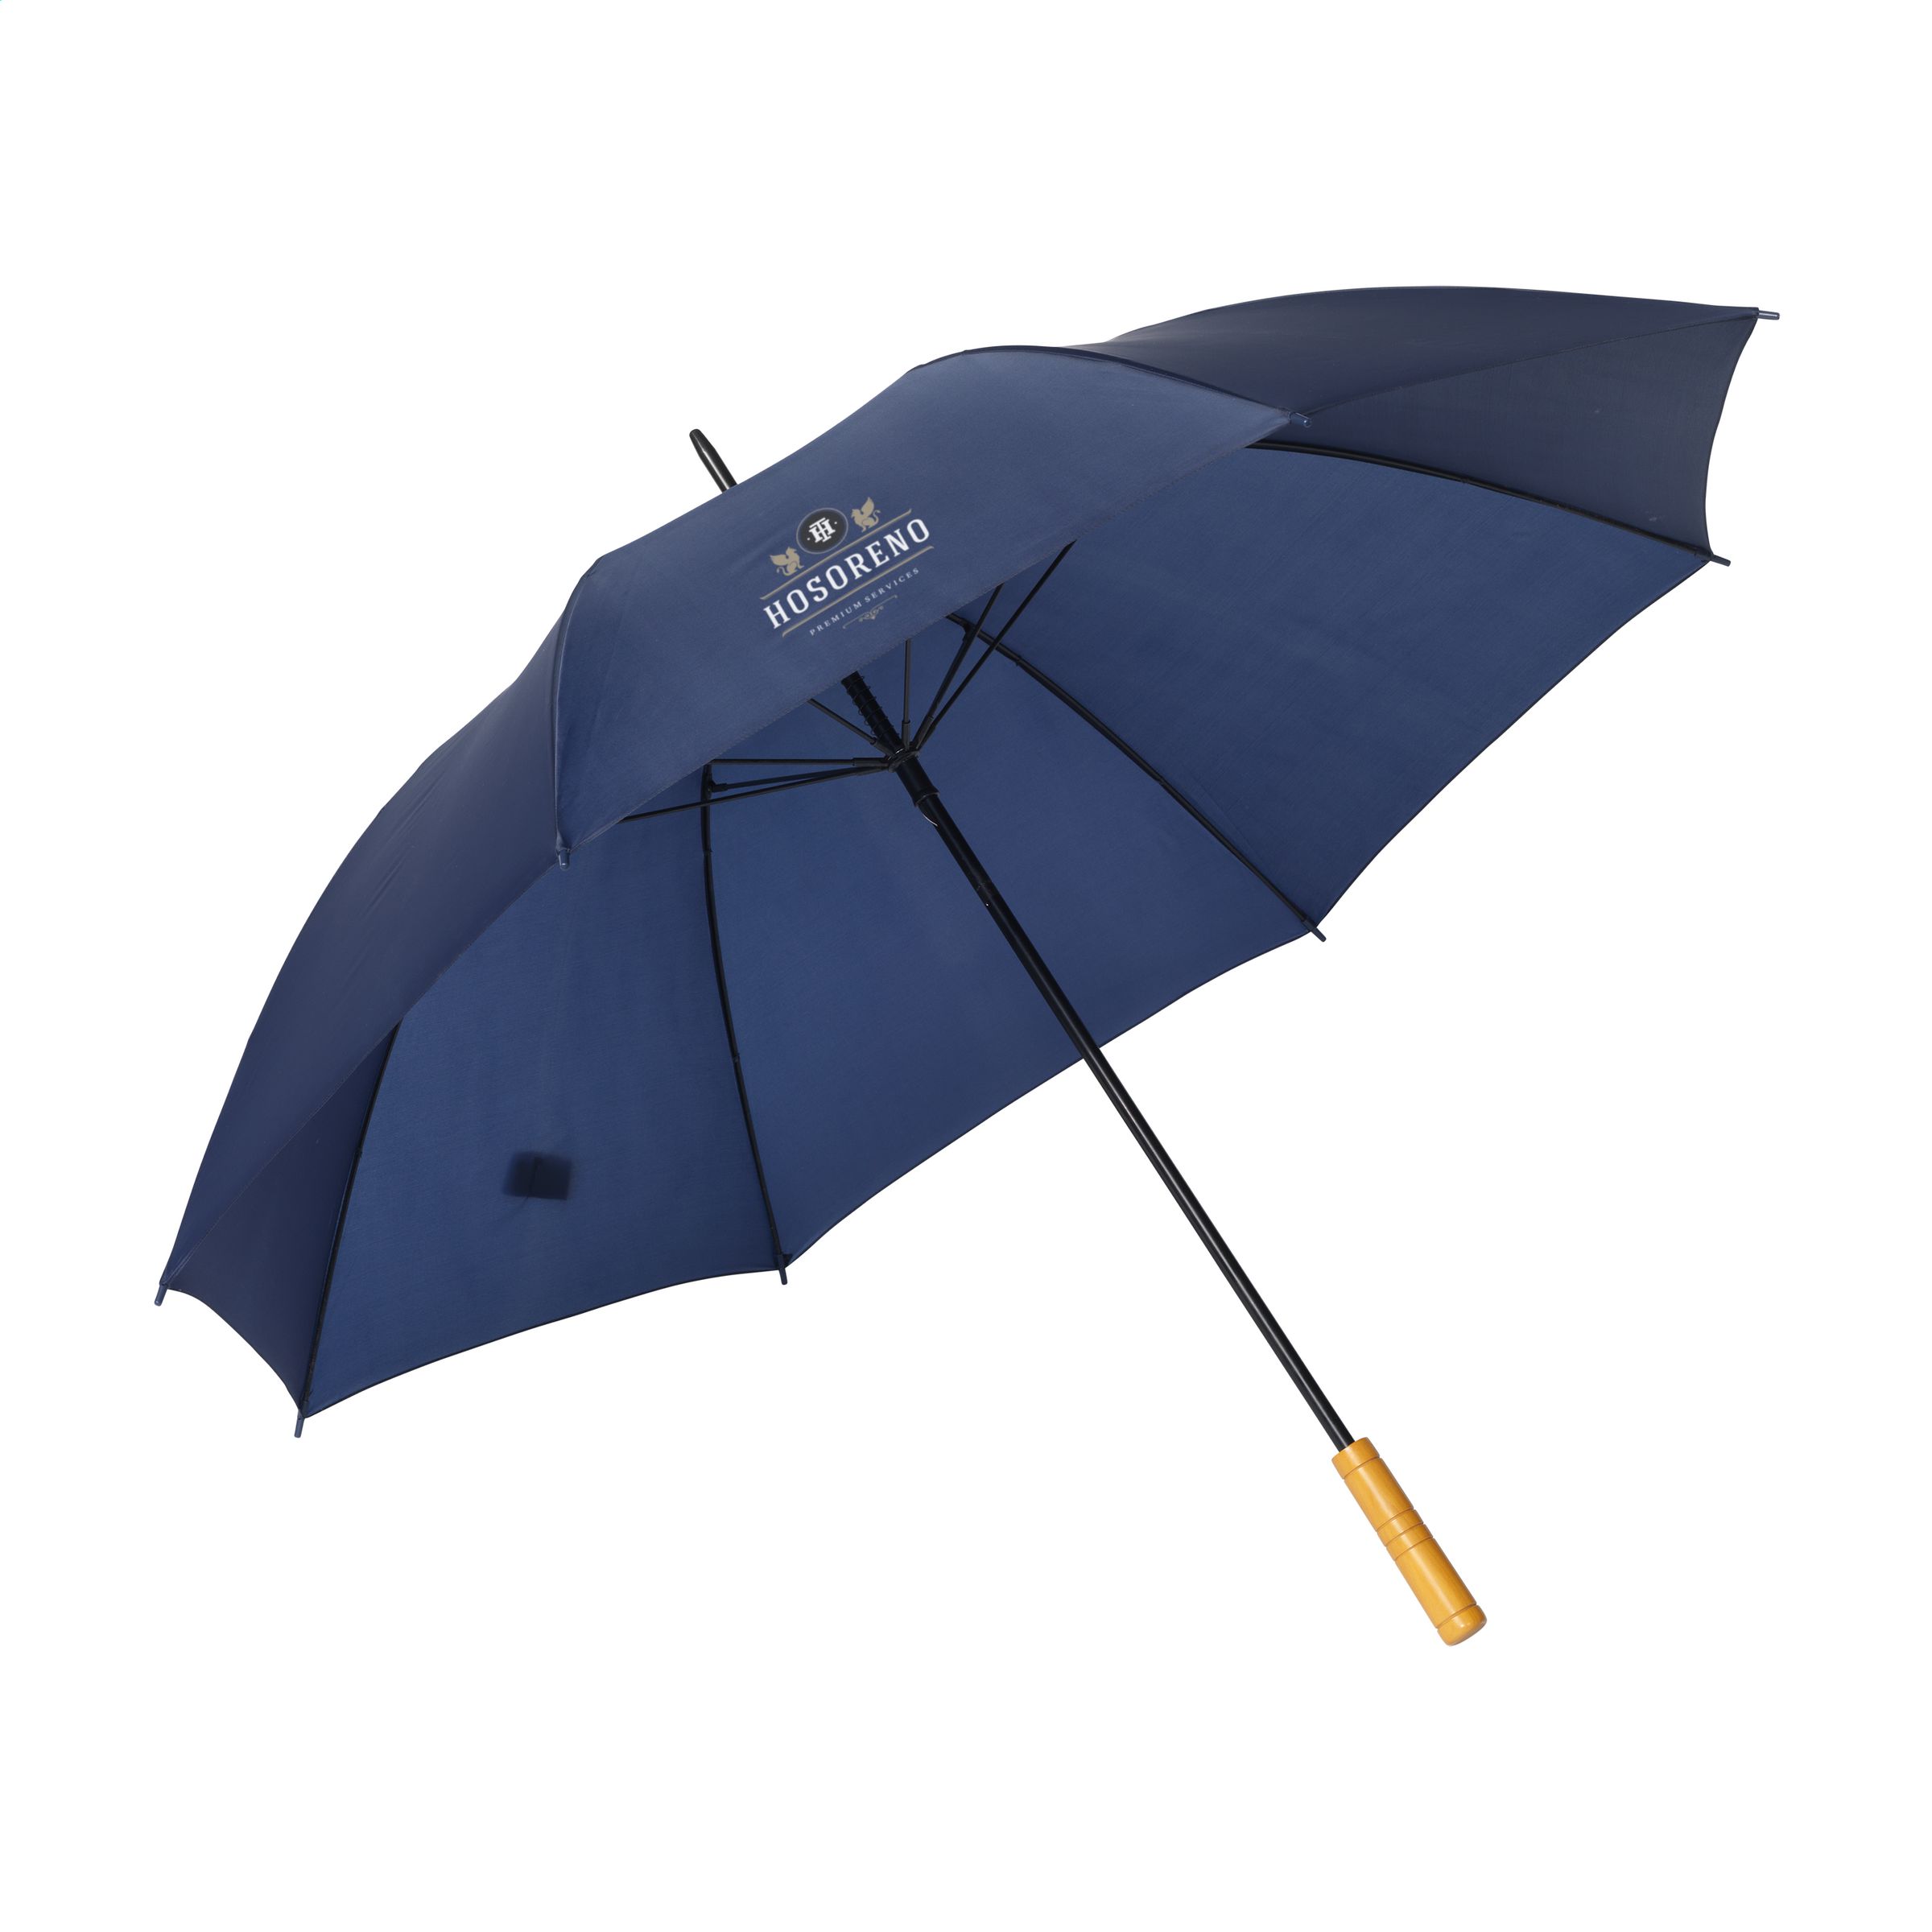 BlueStorm RCS RPET Regenschirm 30 Zoll - Breuberg 